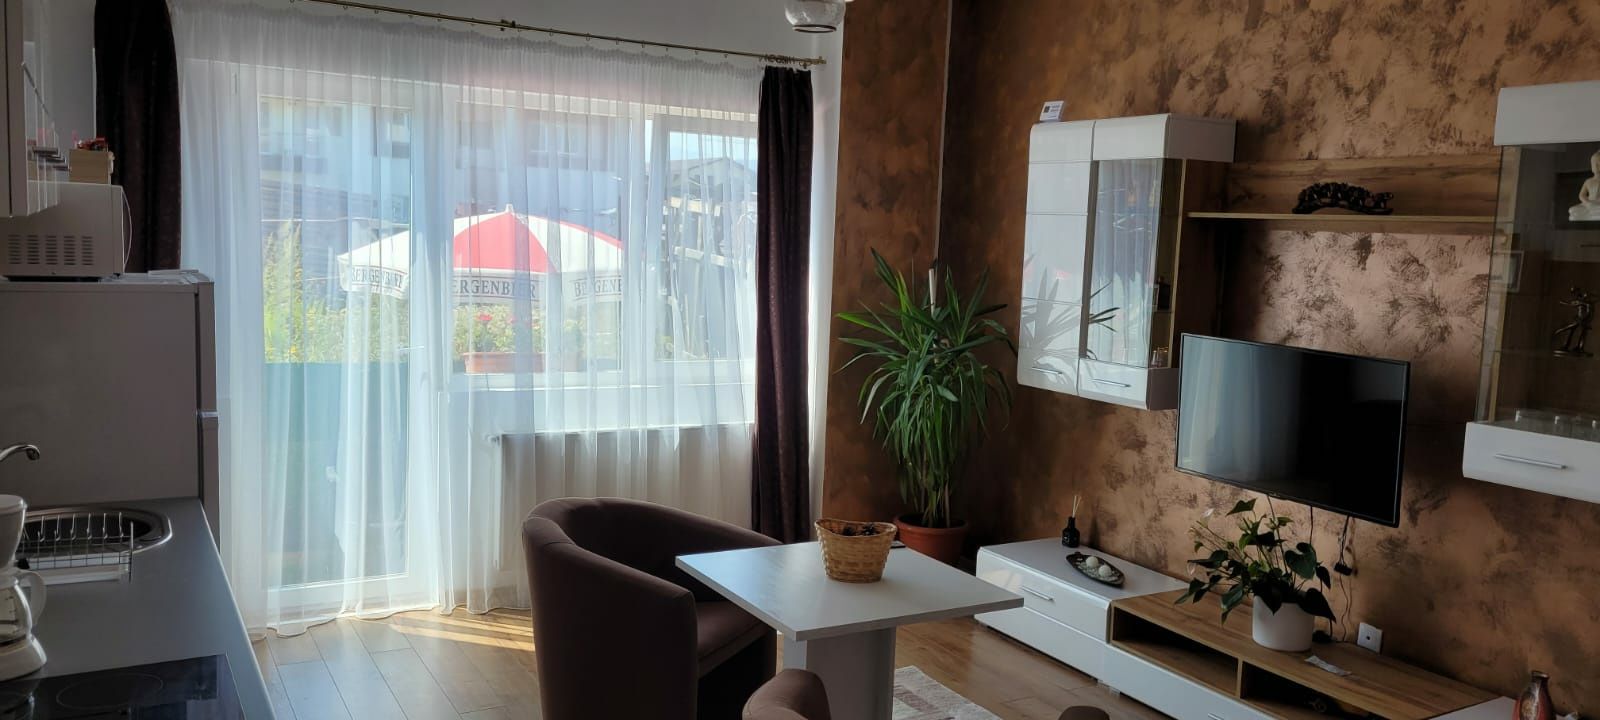 Închiriez garsoniera regim hotelier  Brașov